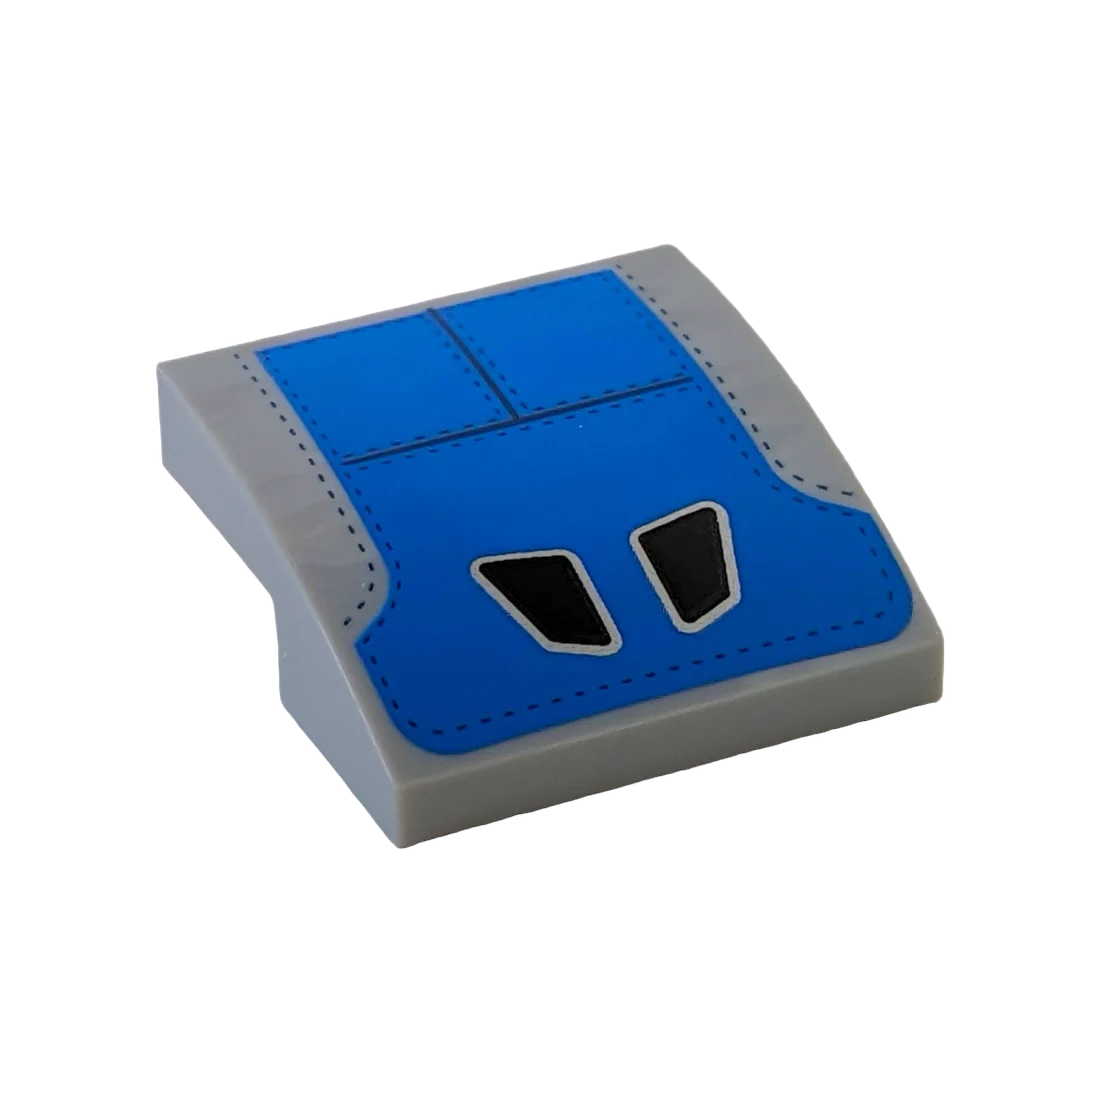 LEGO Slope Curved 2x2 x2/3 - Schwarze Kopfstützenformen auf blauen Sitzpaneelen mit Nähten